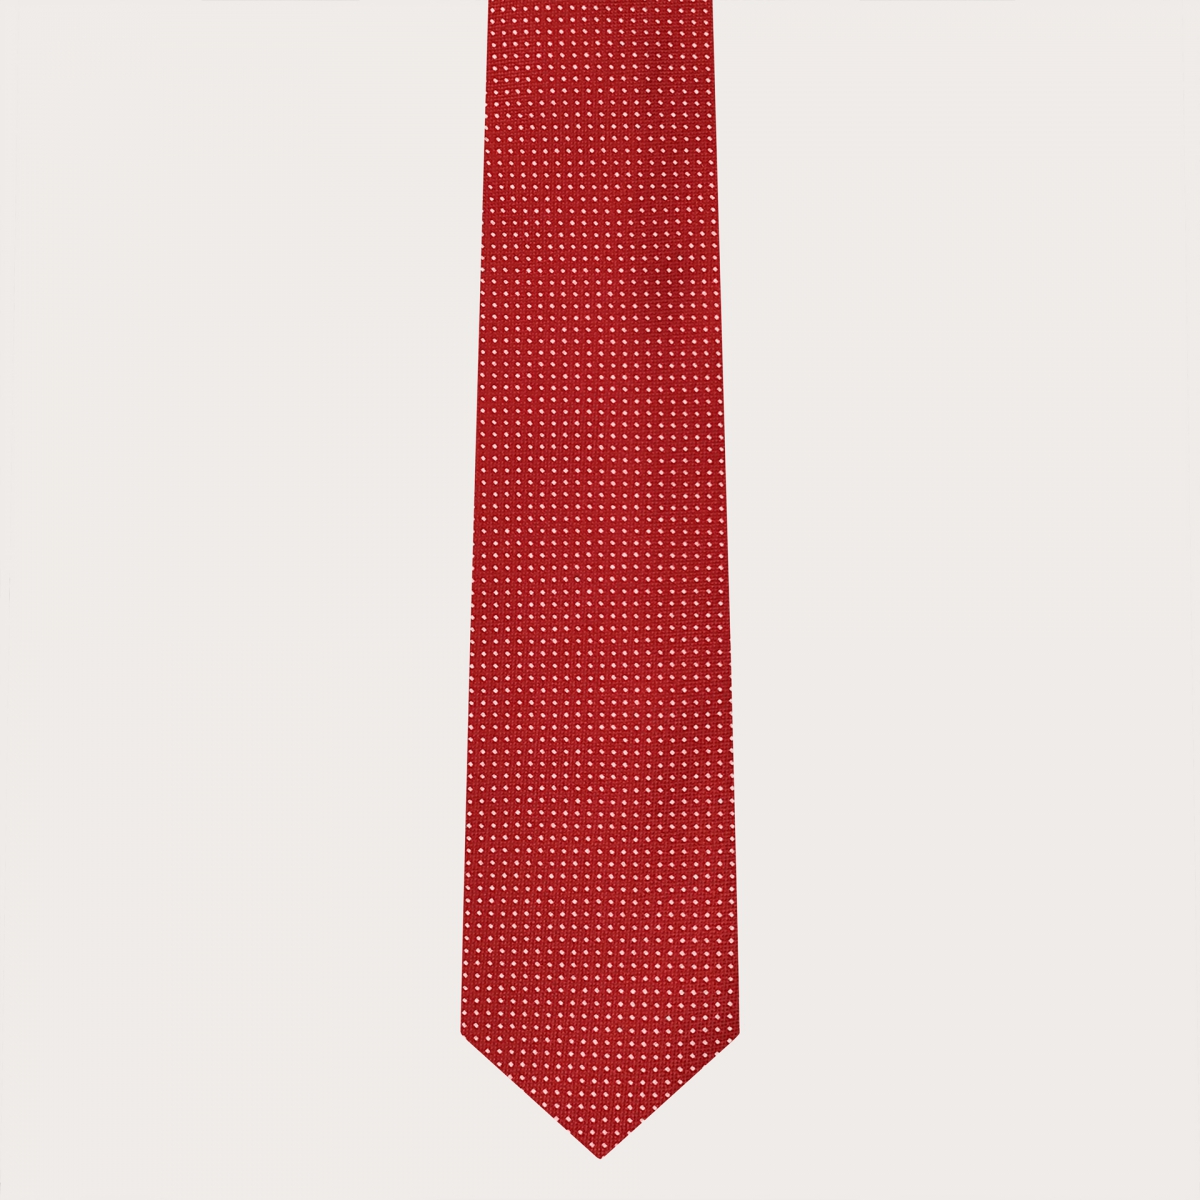 BRUCLE Bretelles et cravate coordonnées en soie, motif paisley Rouge cerise